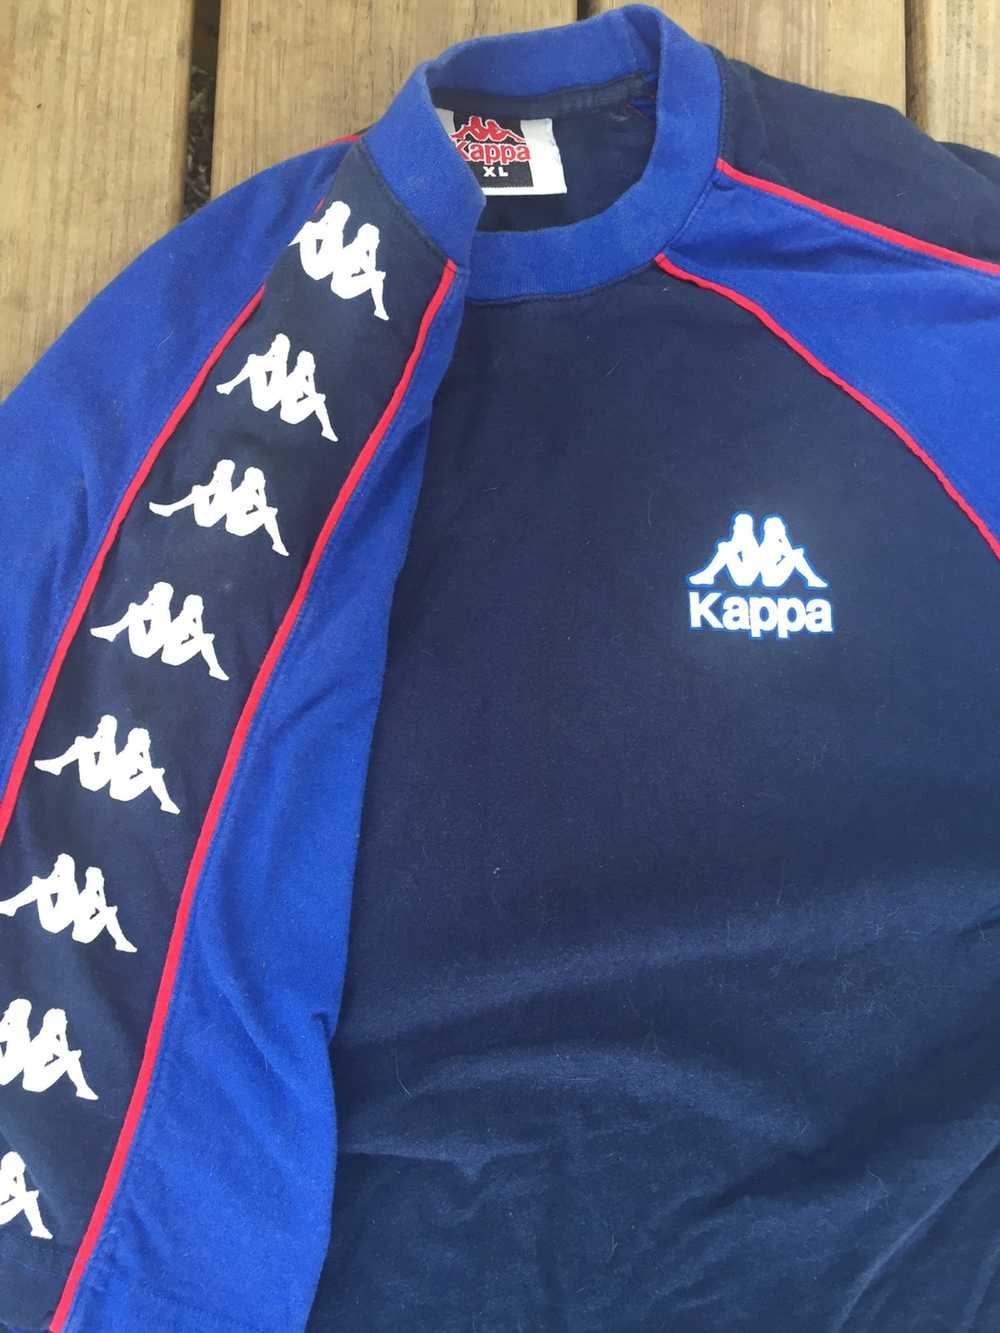 Kappa Vintage Kappa Sports Jersey Shirt XL - image 3